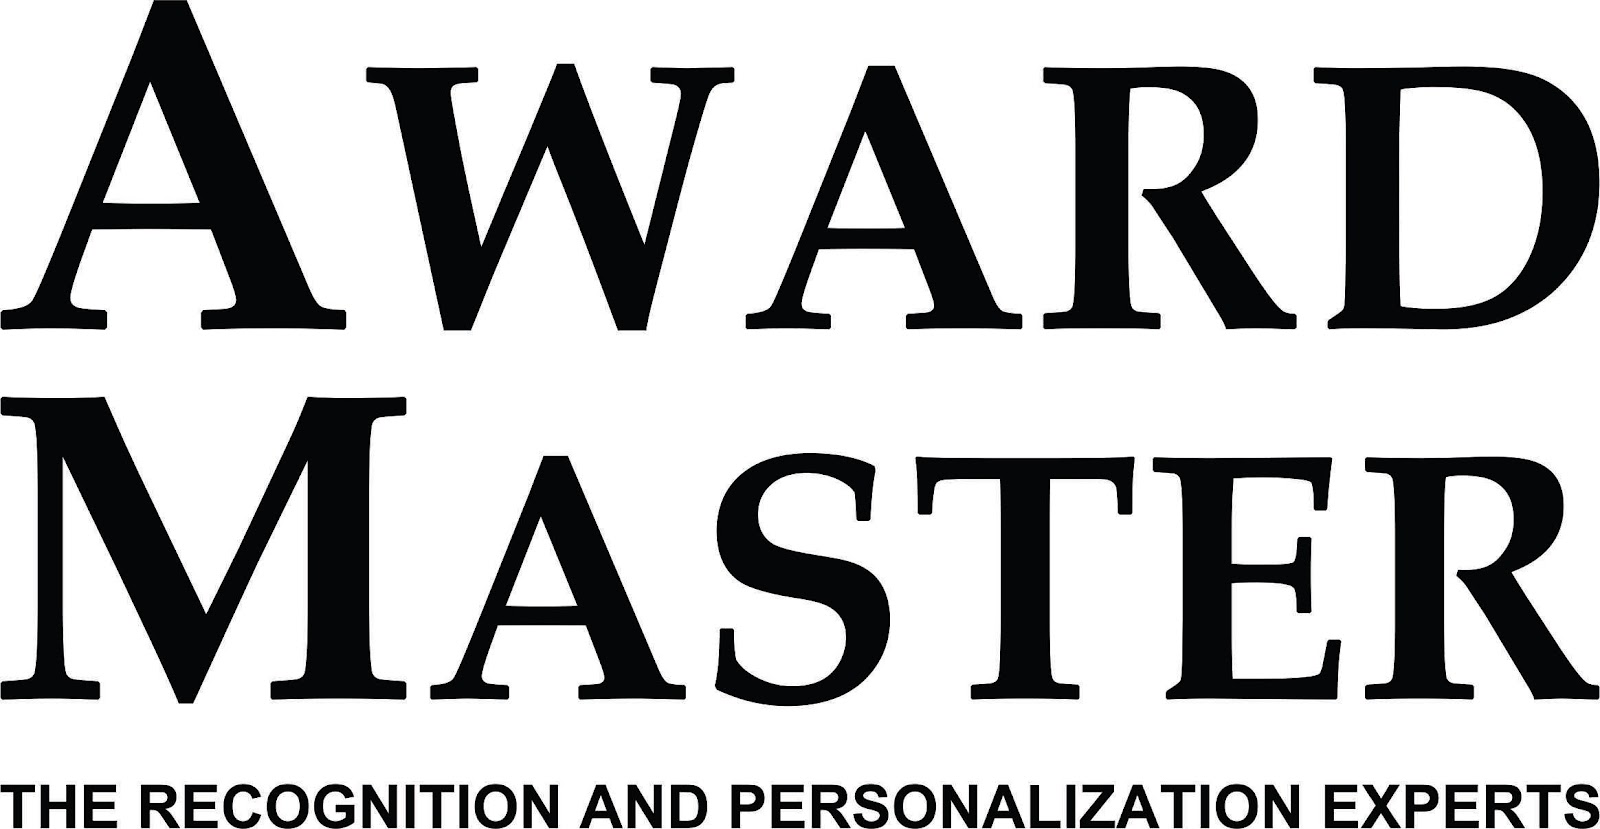 Awardmaster Logo2-2017.jpg